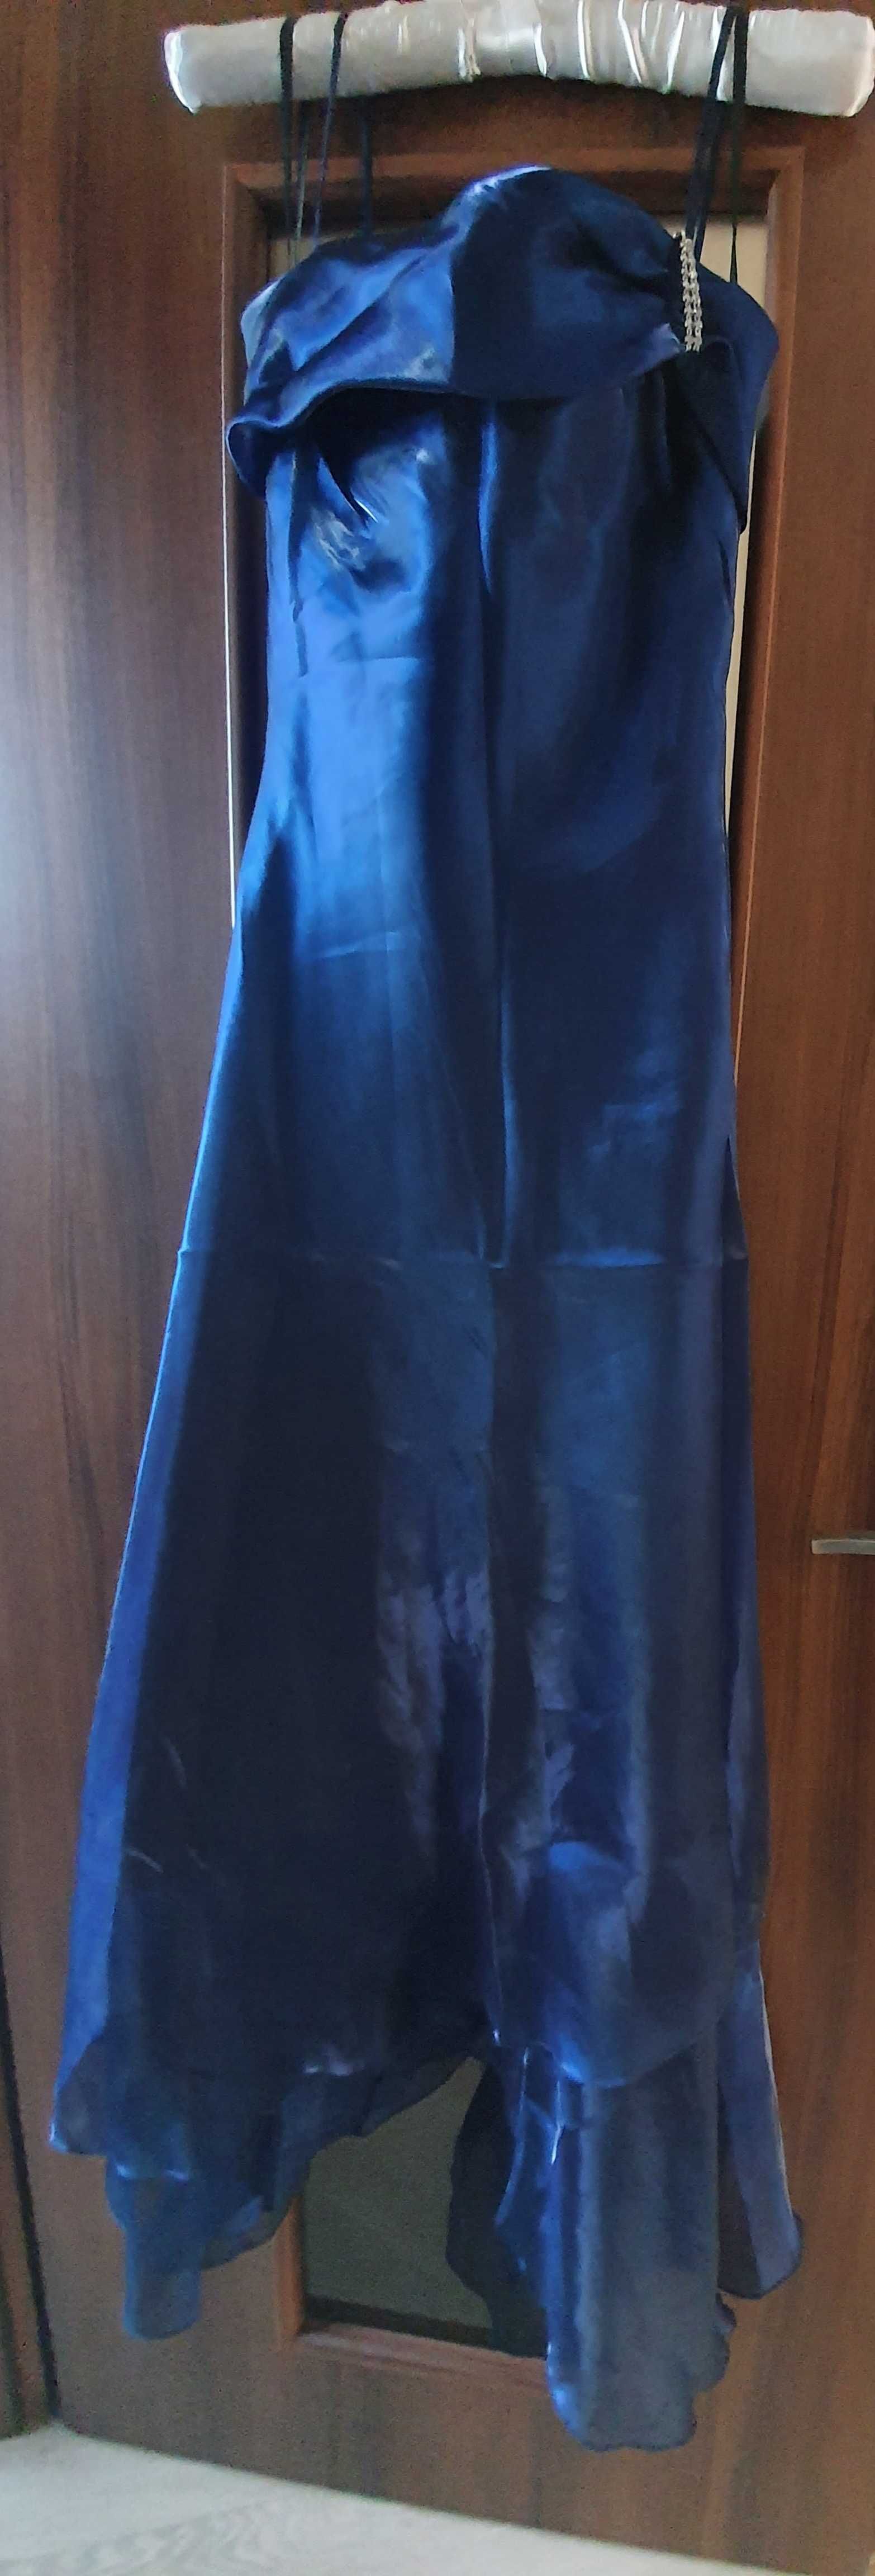 Sukienka wizytowa #długa #granat #organtyna z szalem #r.38 #Sprzedam